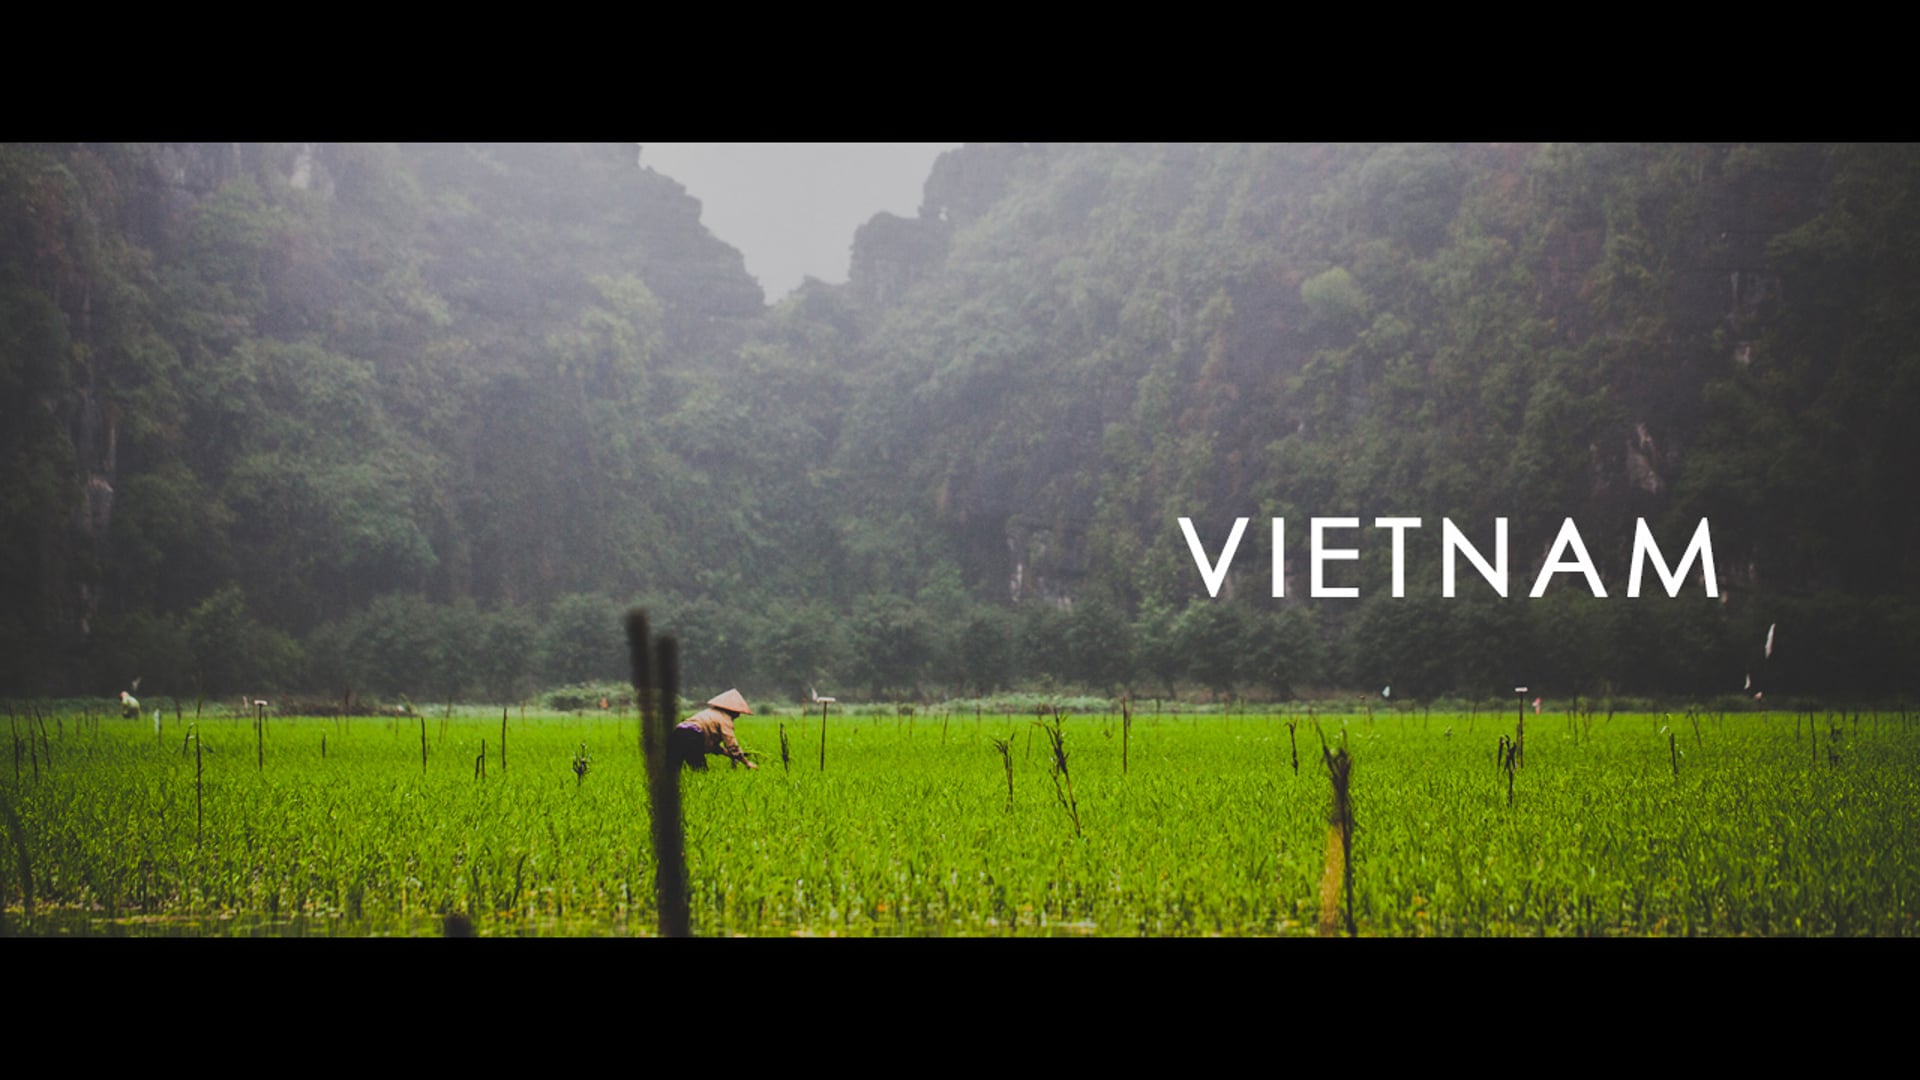 My trip to VIETNAM